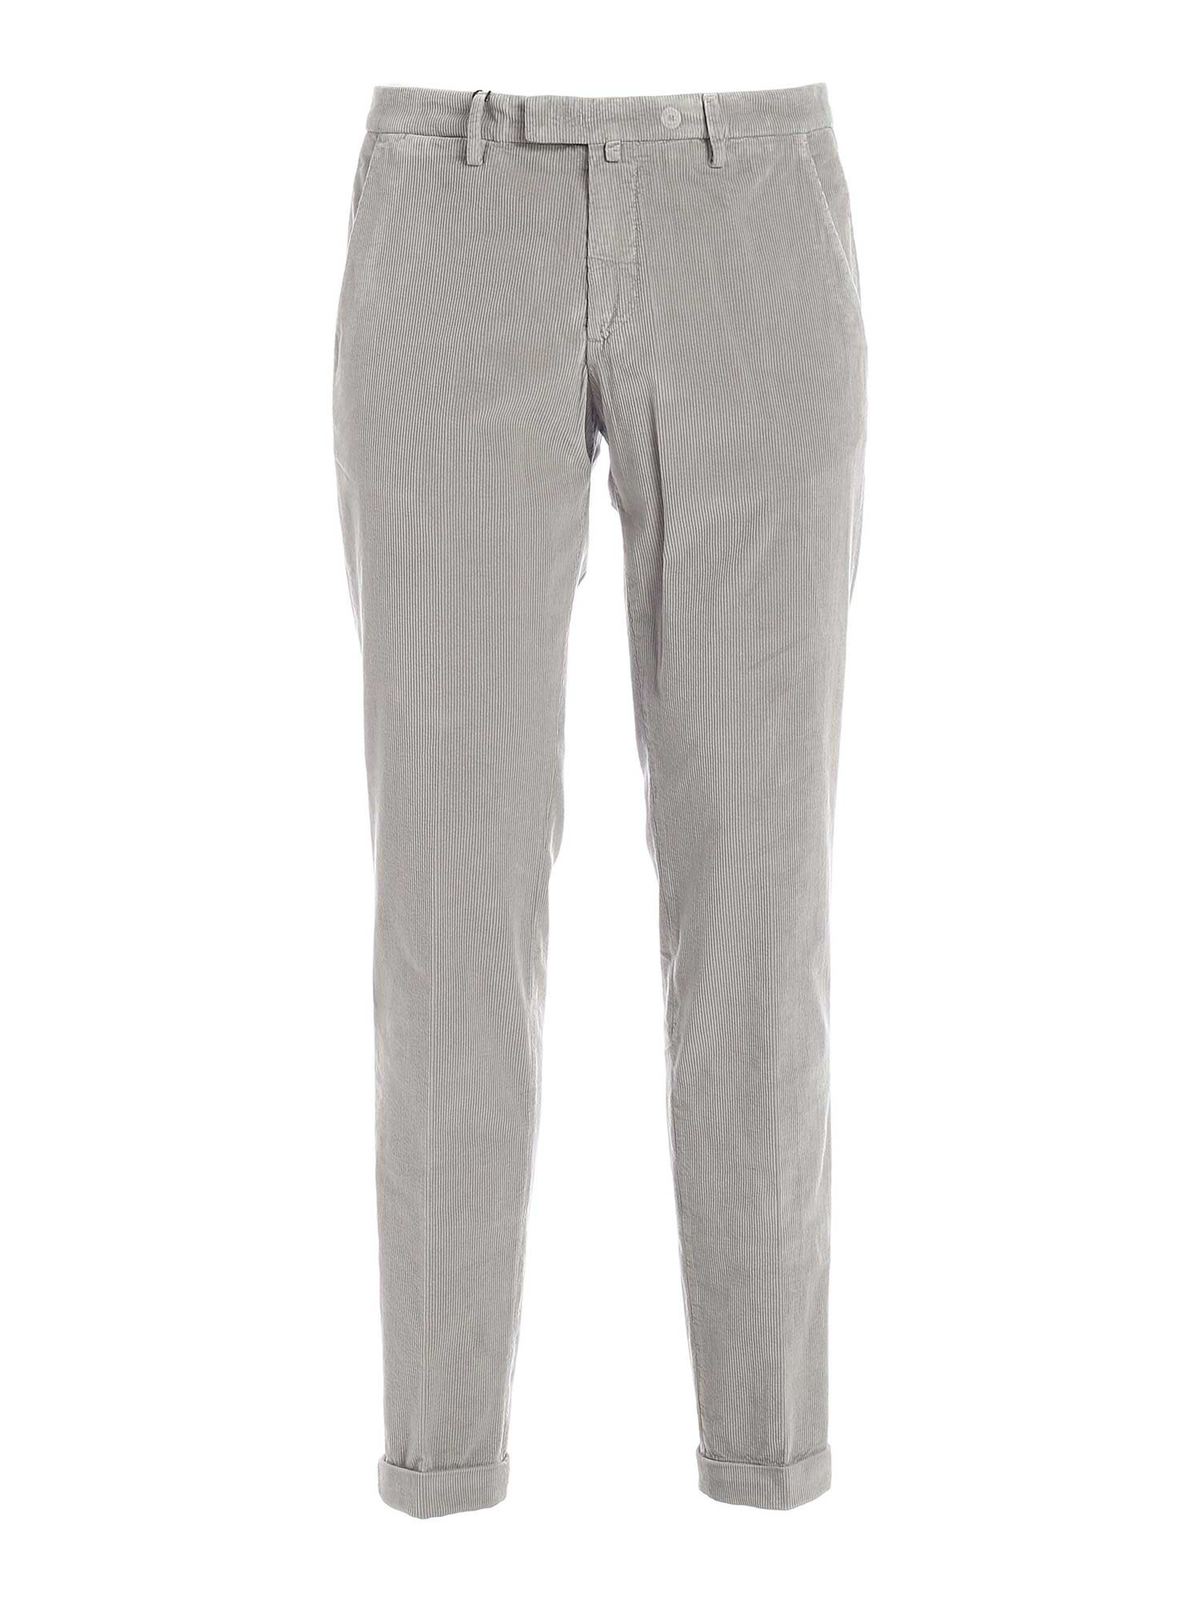 Briglia 1949 Velvet Trouser in Grey Slacks and Chinos Casual trousers and trousers Grey for Men Mens Clothing Trousers 